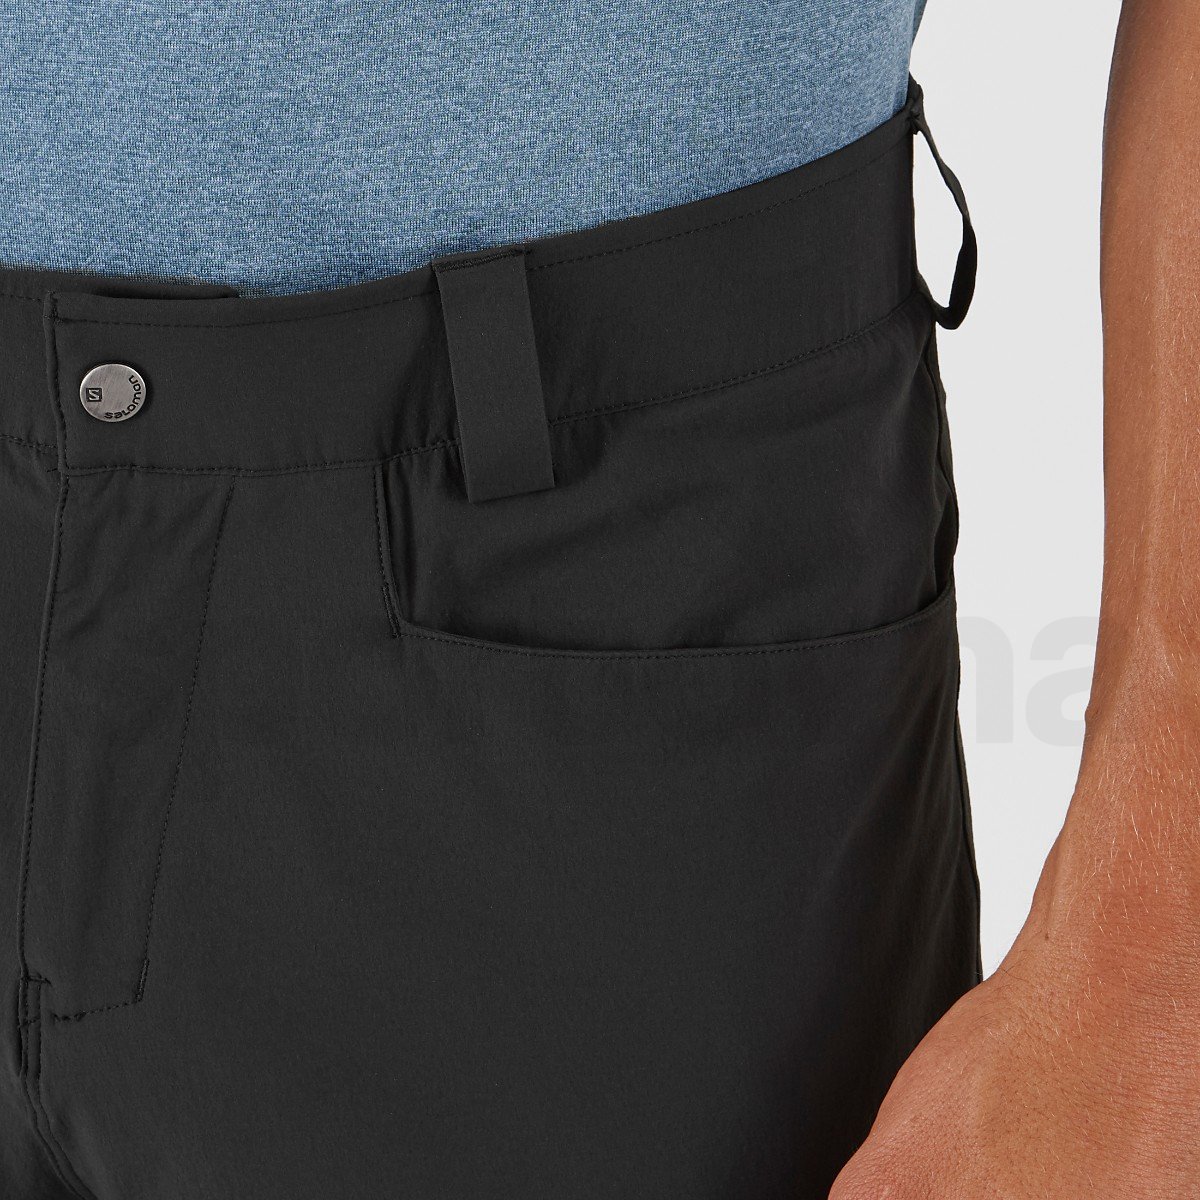 Kalhoty Salomon WAYFARER TAPERED PANTS M - černá (standardní délka)